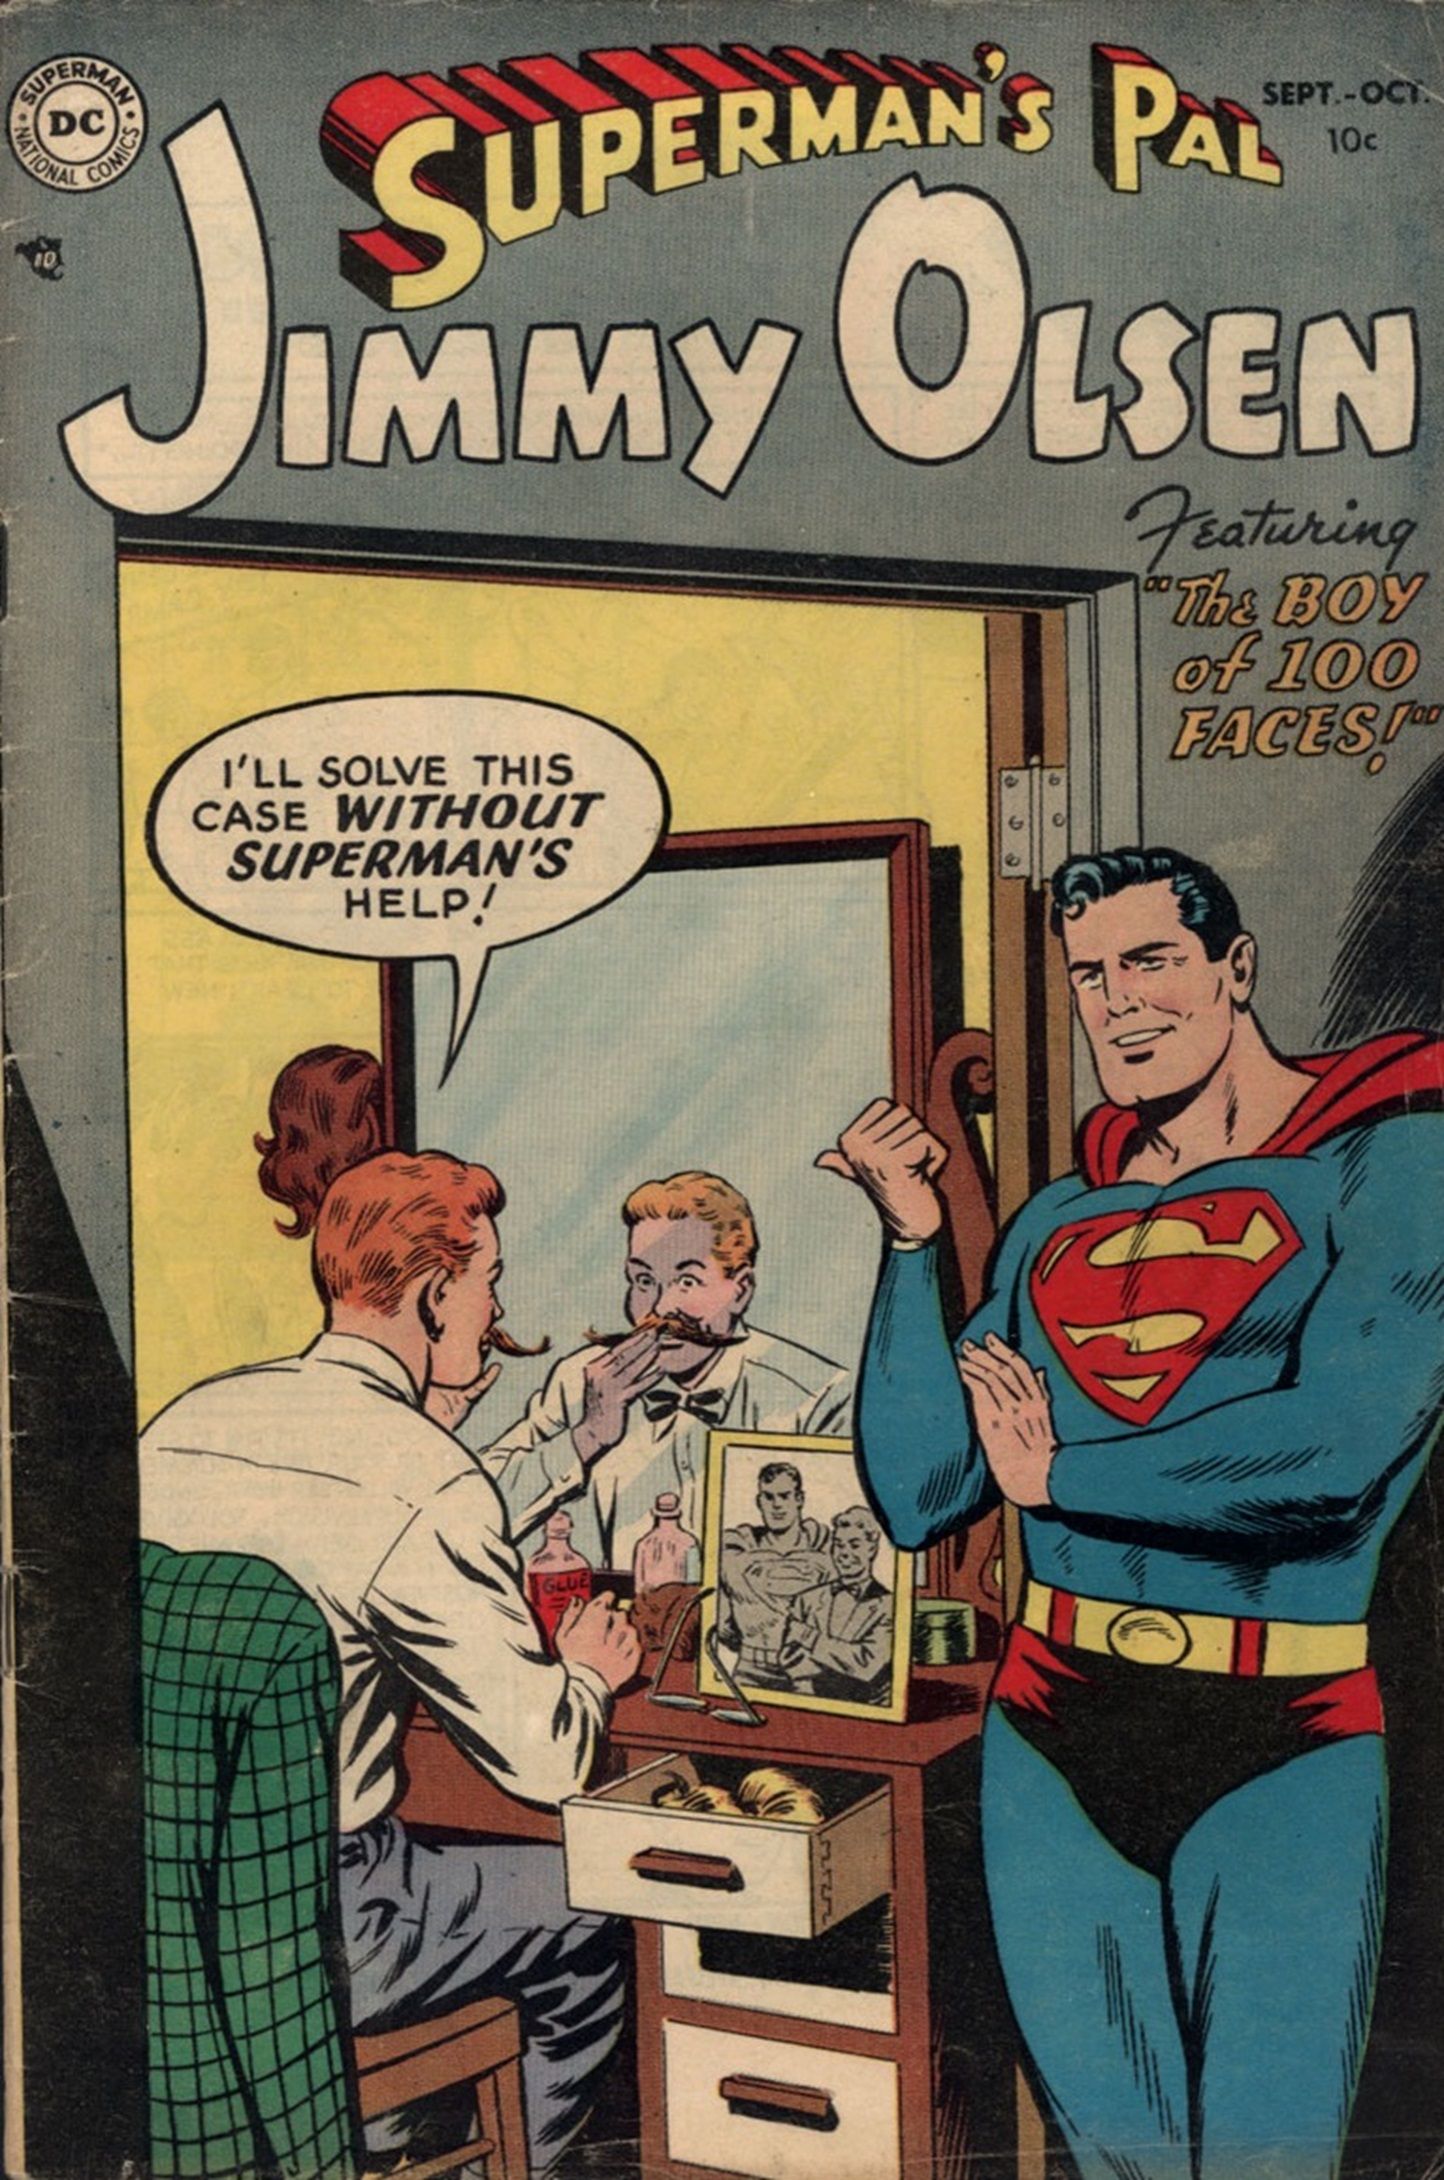 10 самых крутых фрагментов истории Супермена, к которым DC нужно вернуться